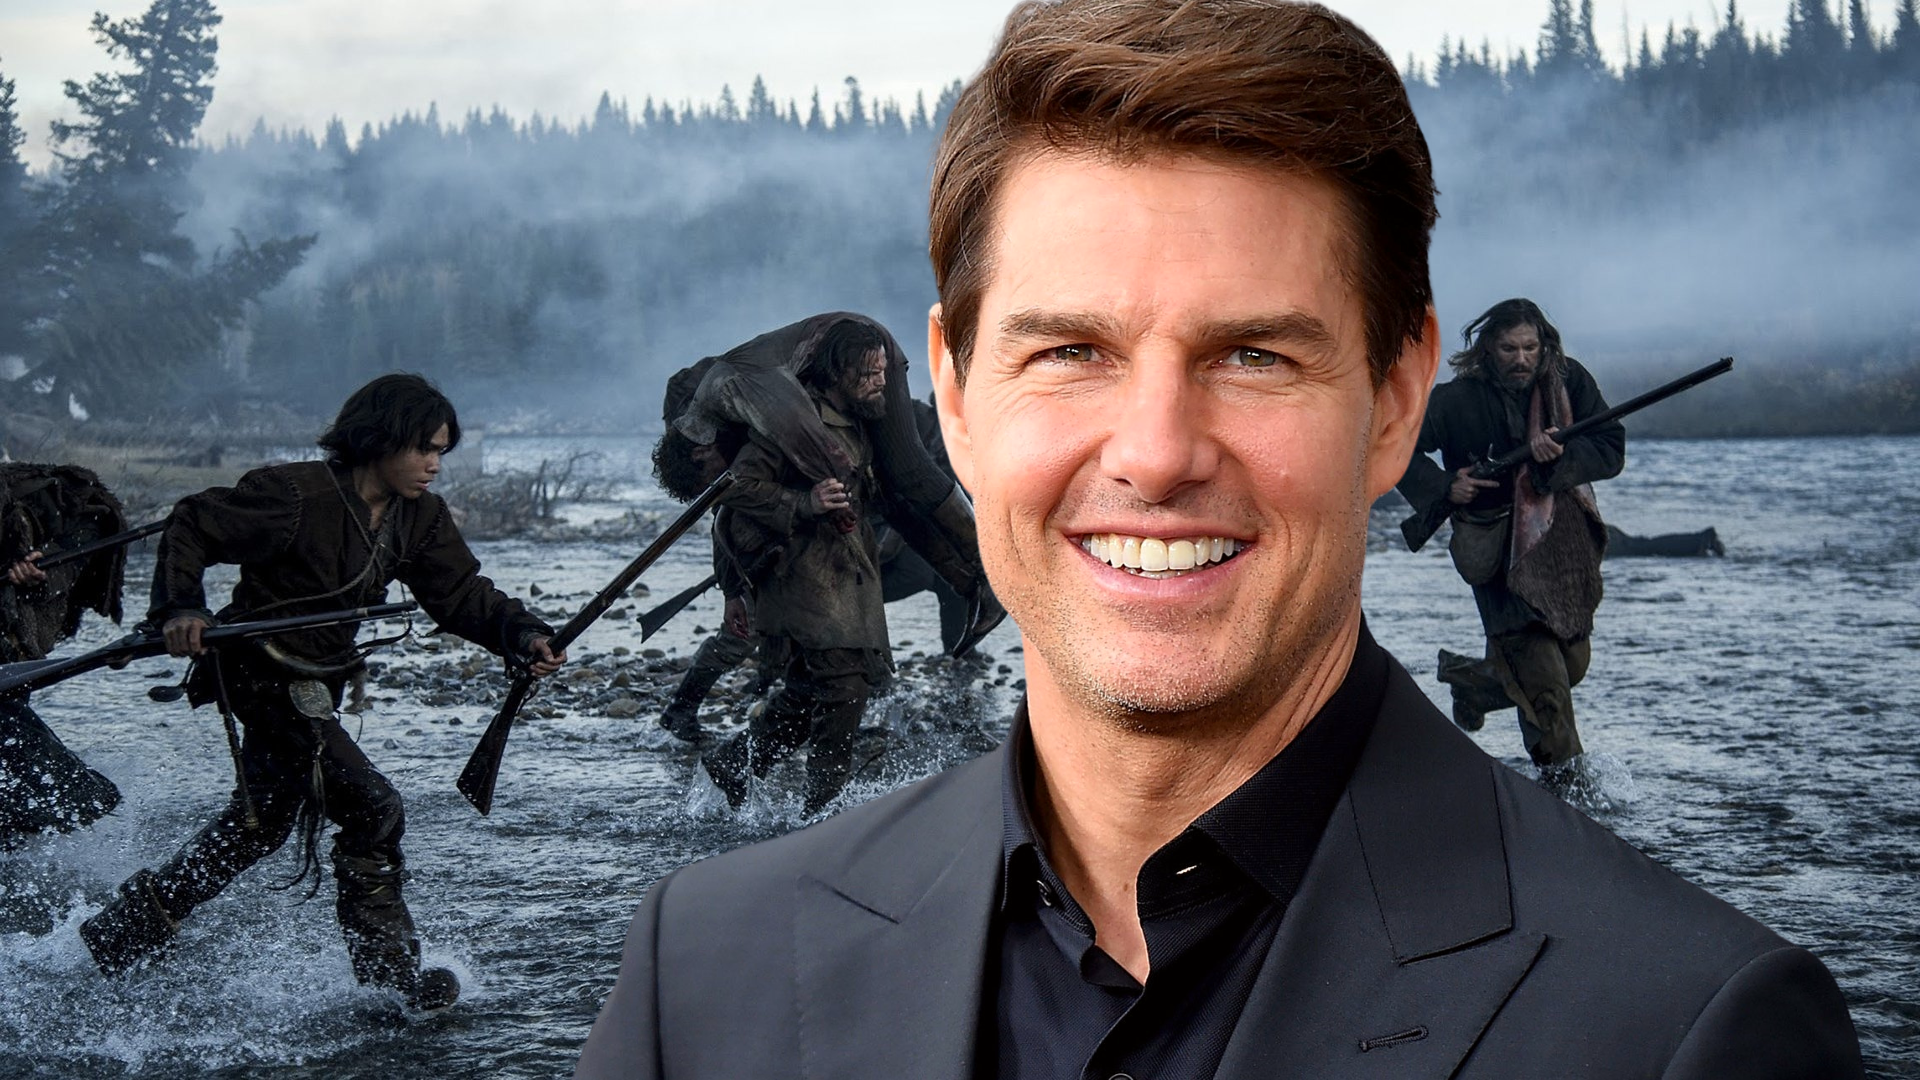 Tom Cruise chez le réalisateur de The Revenant pour un projet de film 